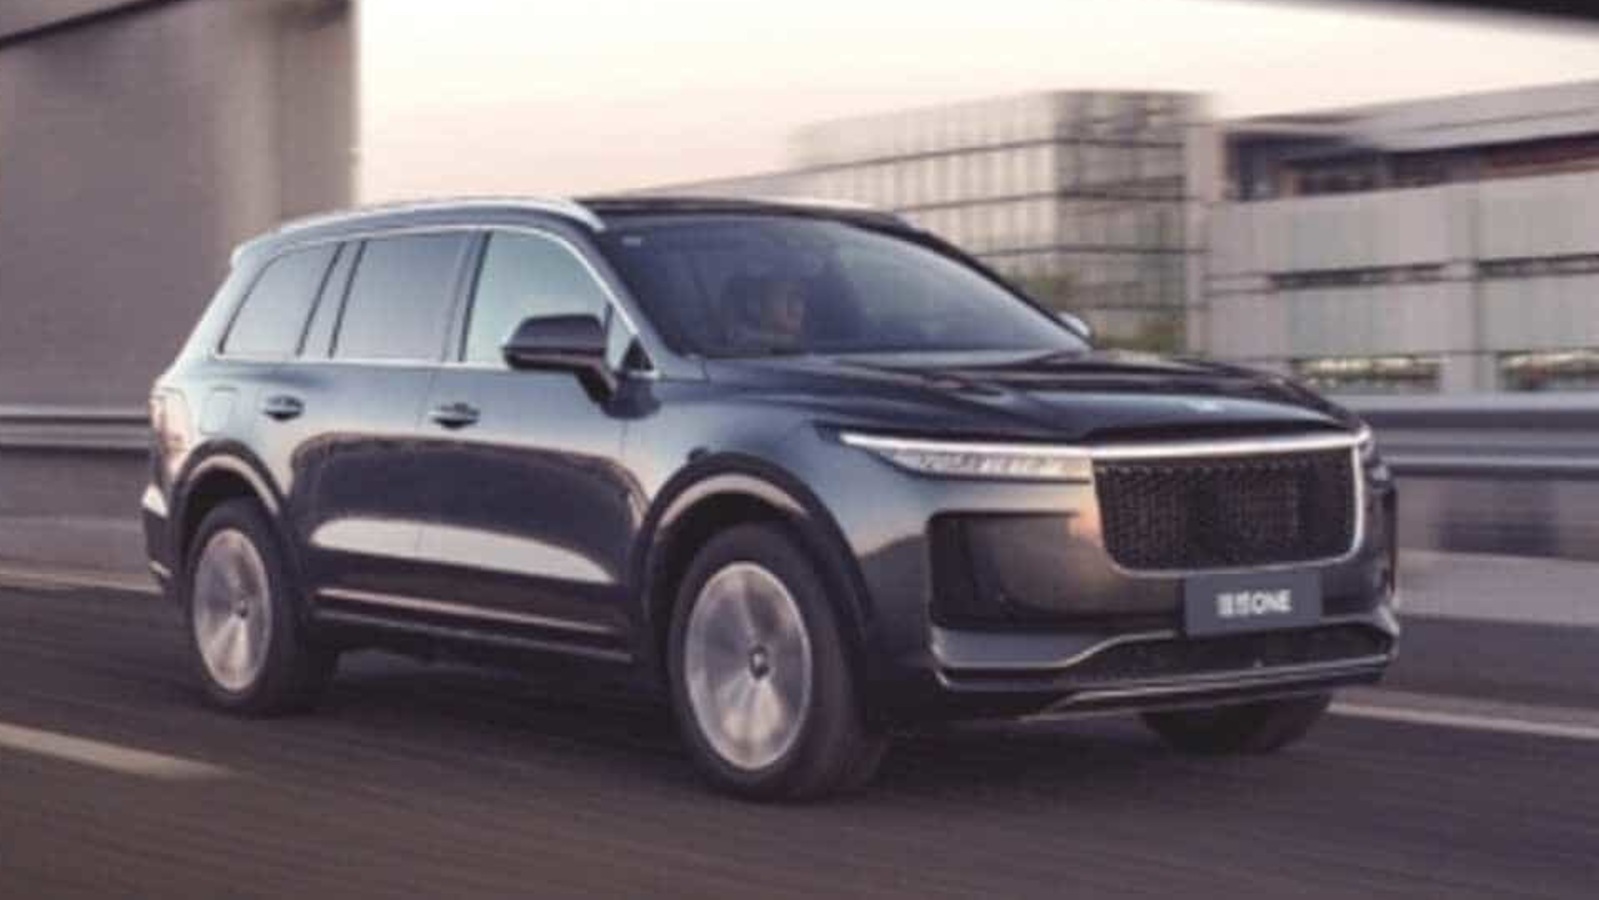 Li Auto (NASDAQ: LI) – the Latest Chinese EV Maker to List in the